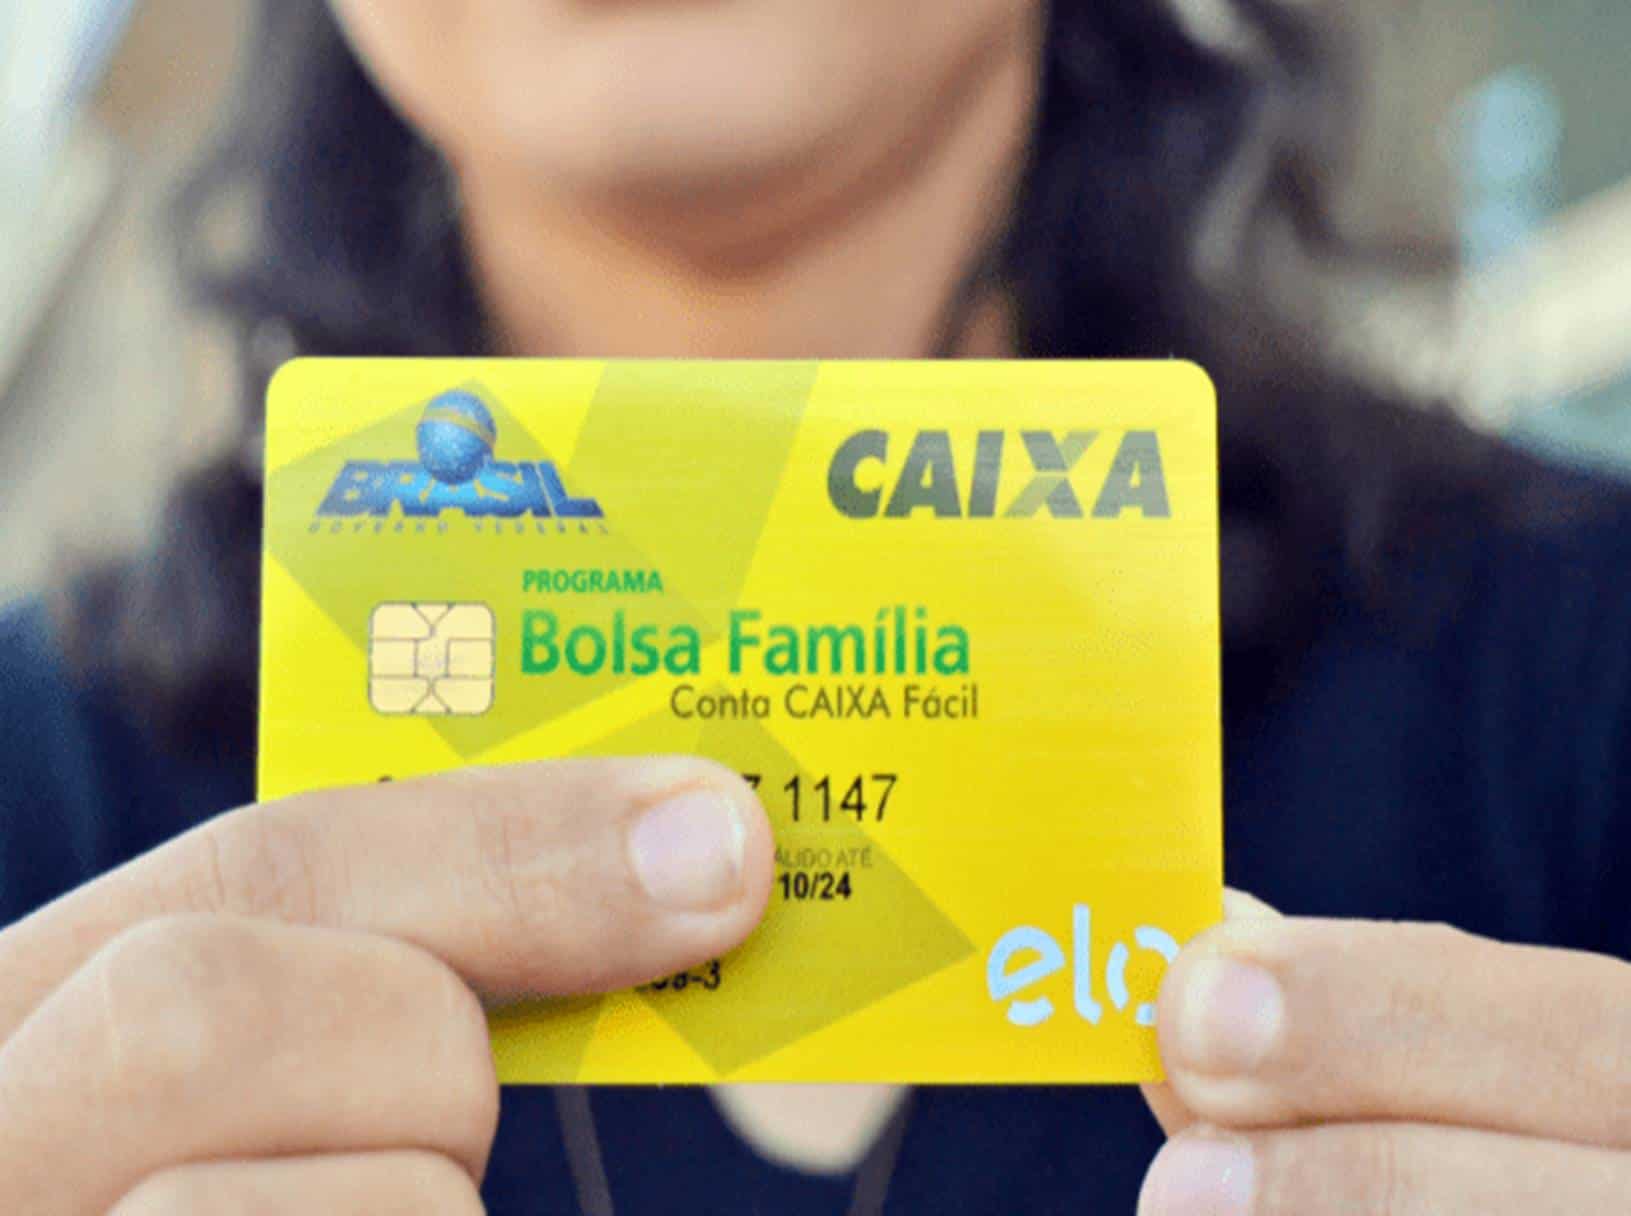  Bolsa Família: Propostas querem impedir transferência de R$ 84 mi